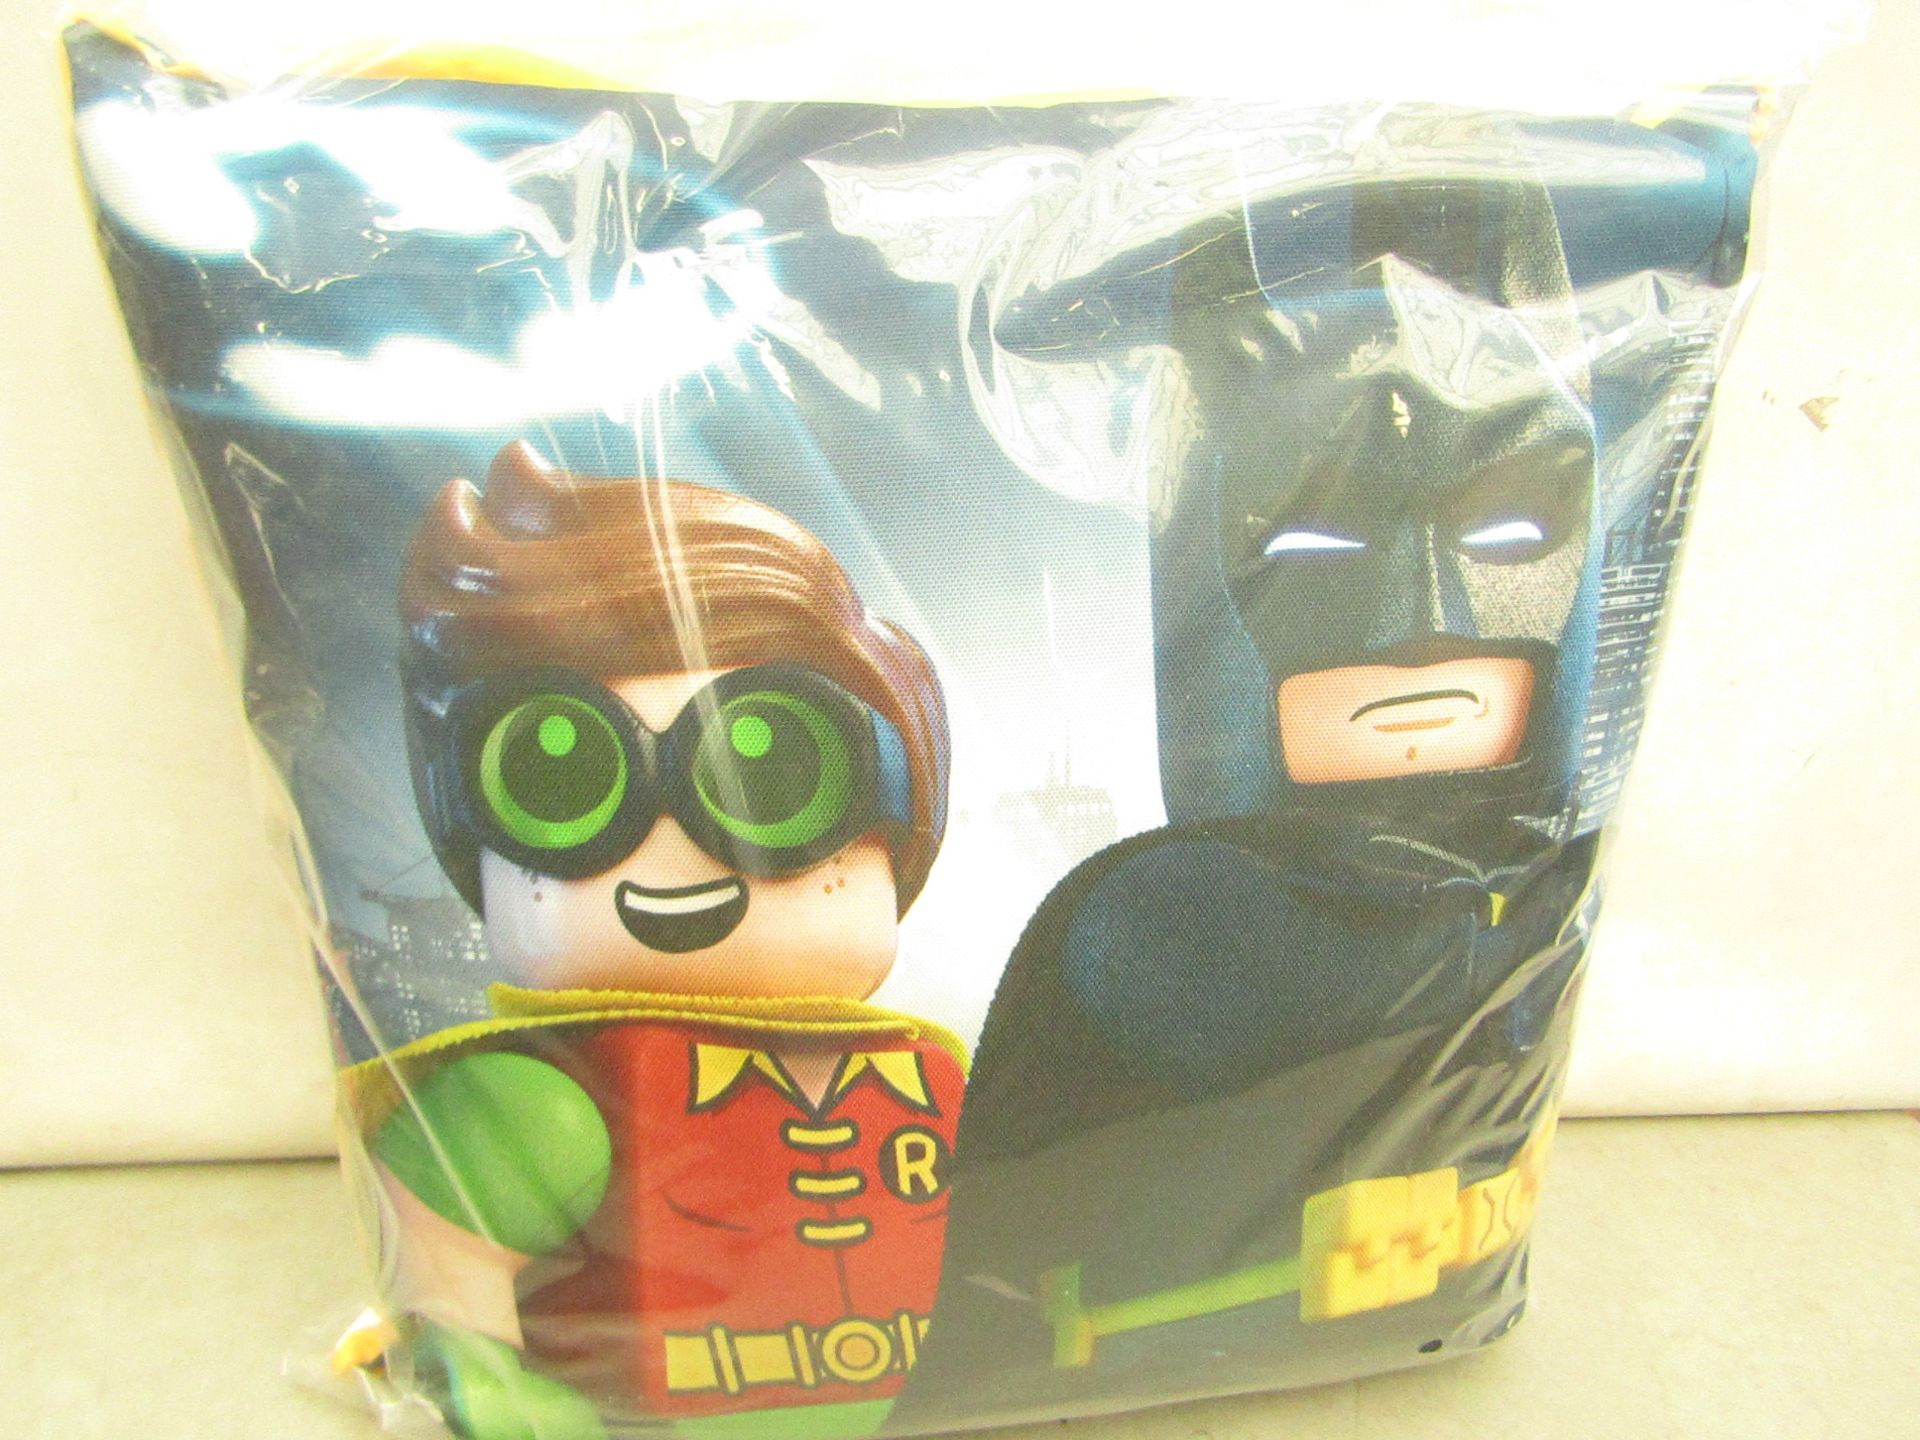 4 x Batman & Robin Cushions. New & packaged